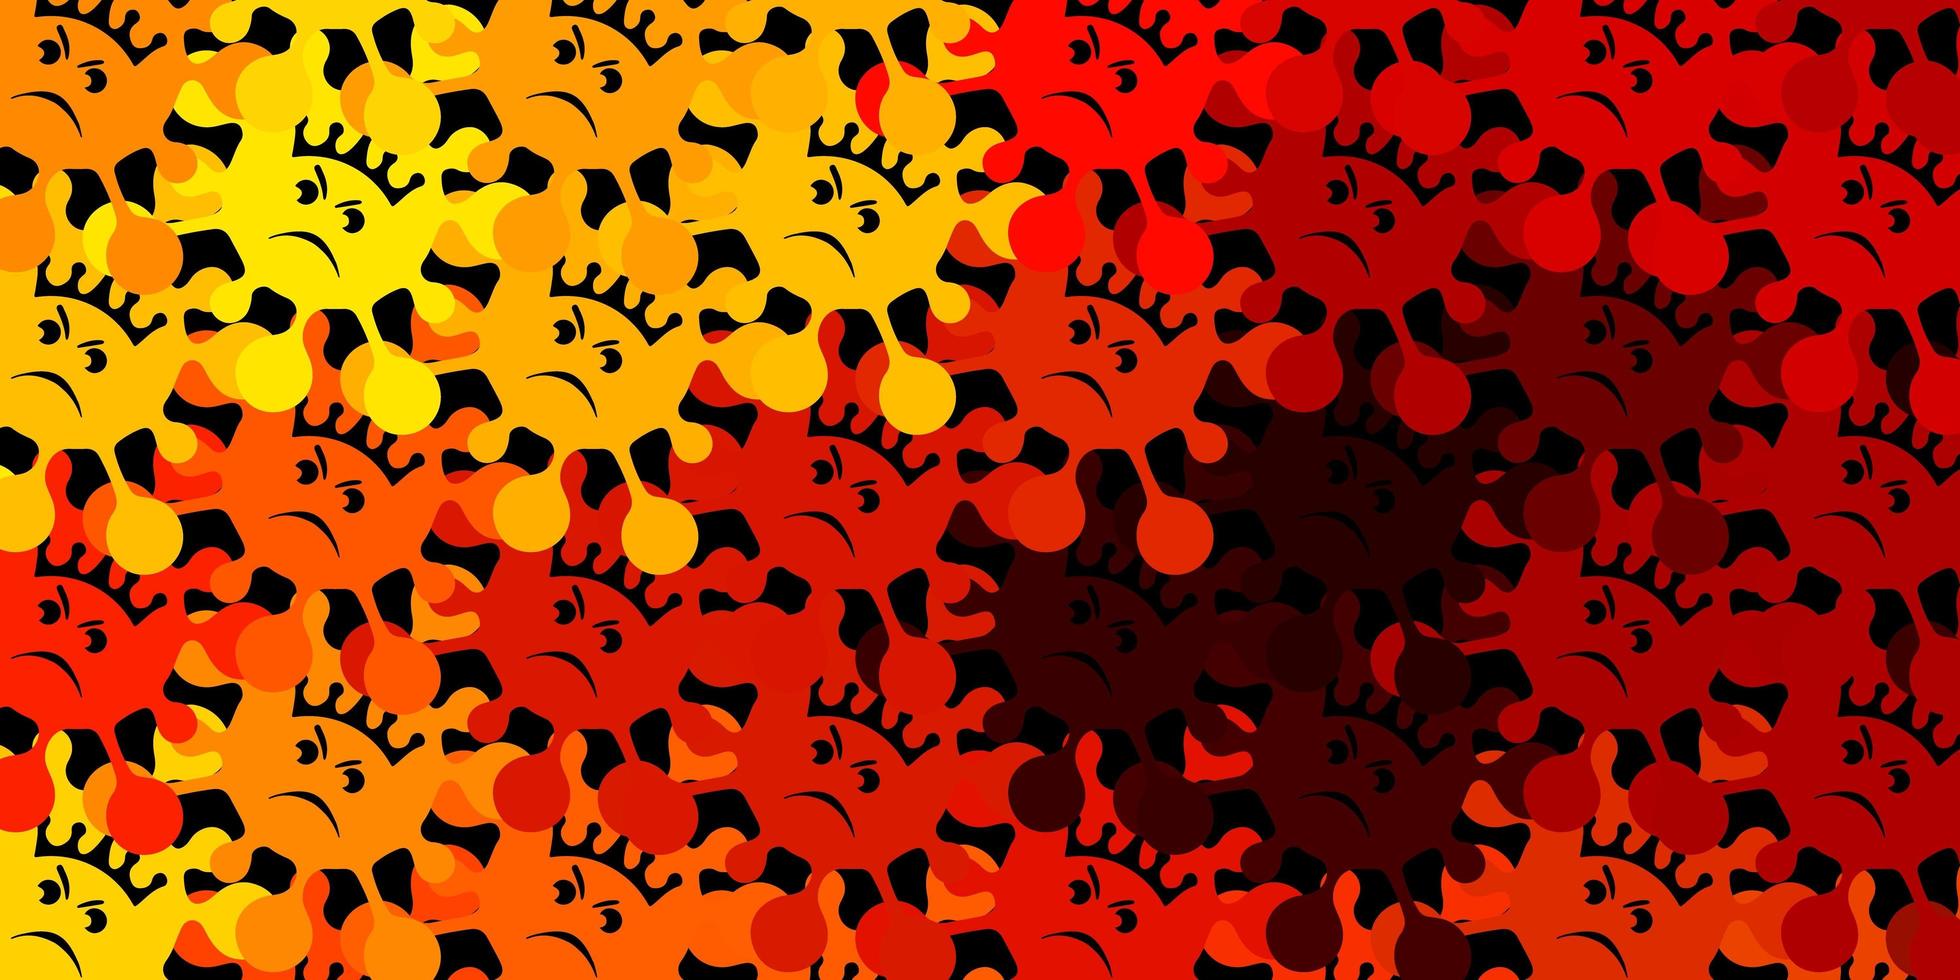 sfondo vettoriale arancione scuro con simboli di virus